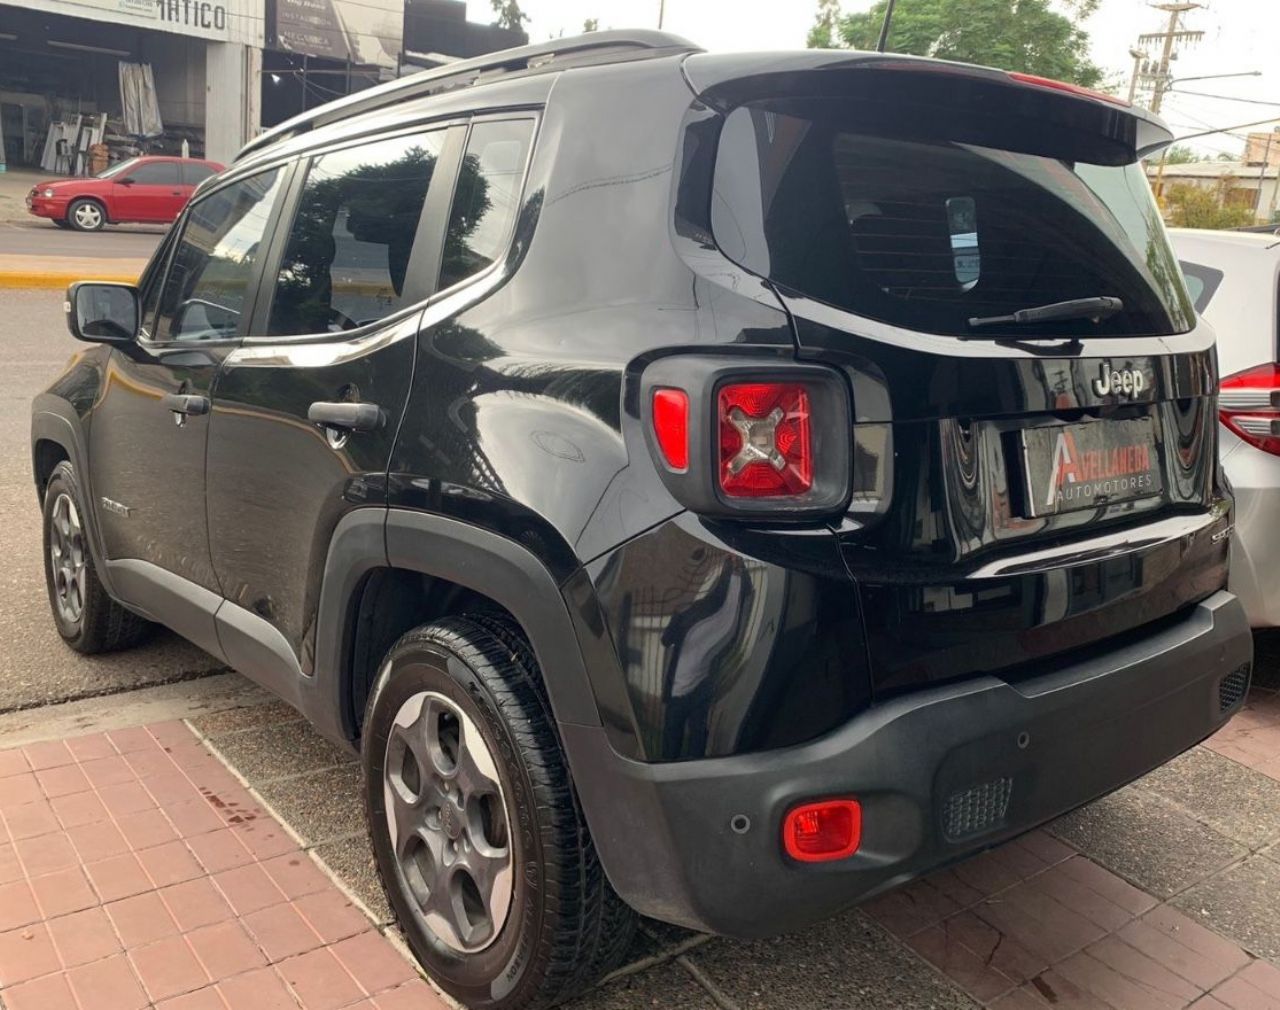 Jeep Renegade Usado en Mendoza, deRuedas